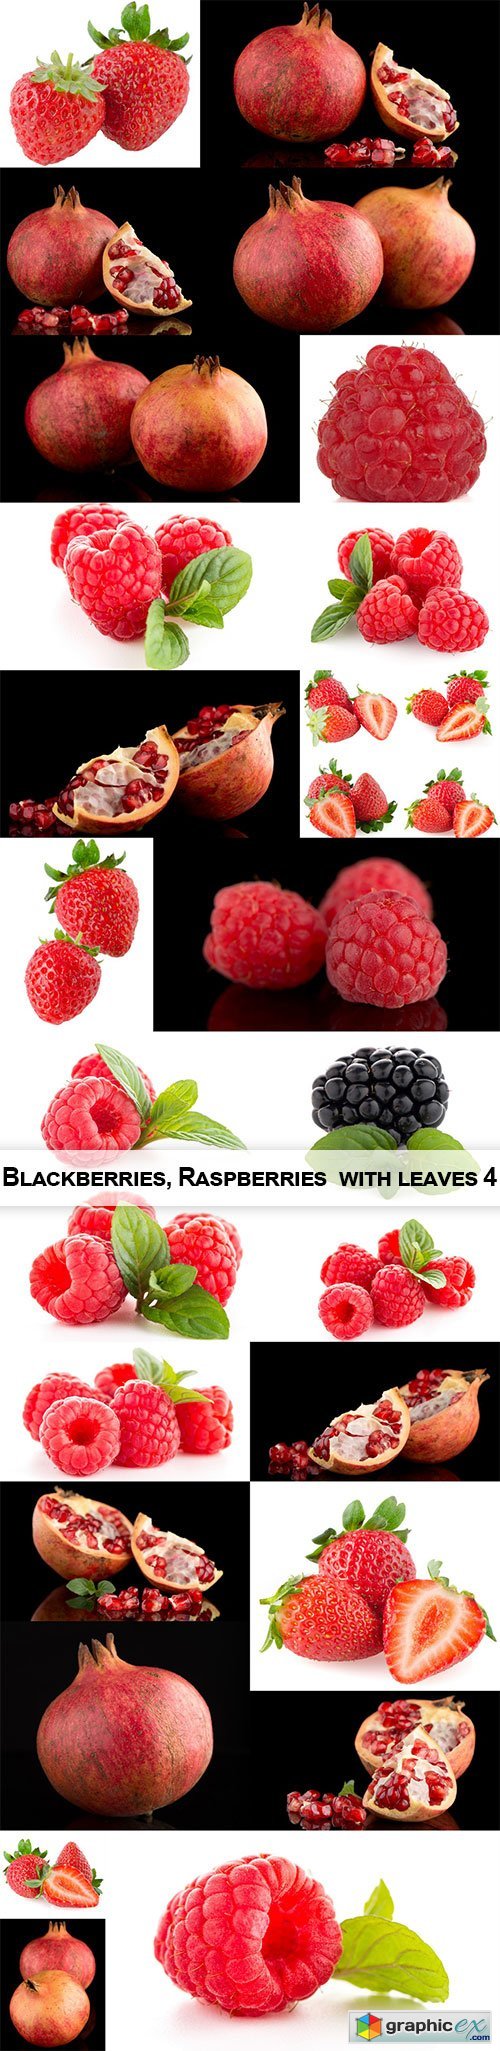  Blackberries, Raspberries with leaves 4